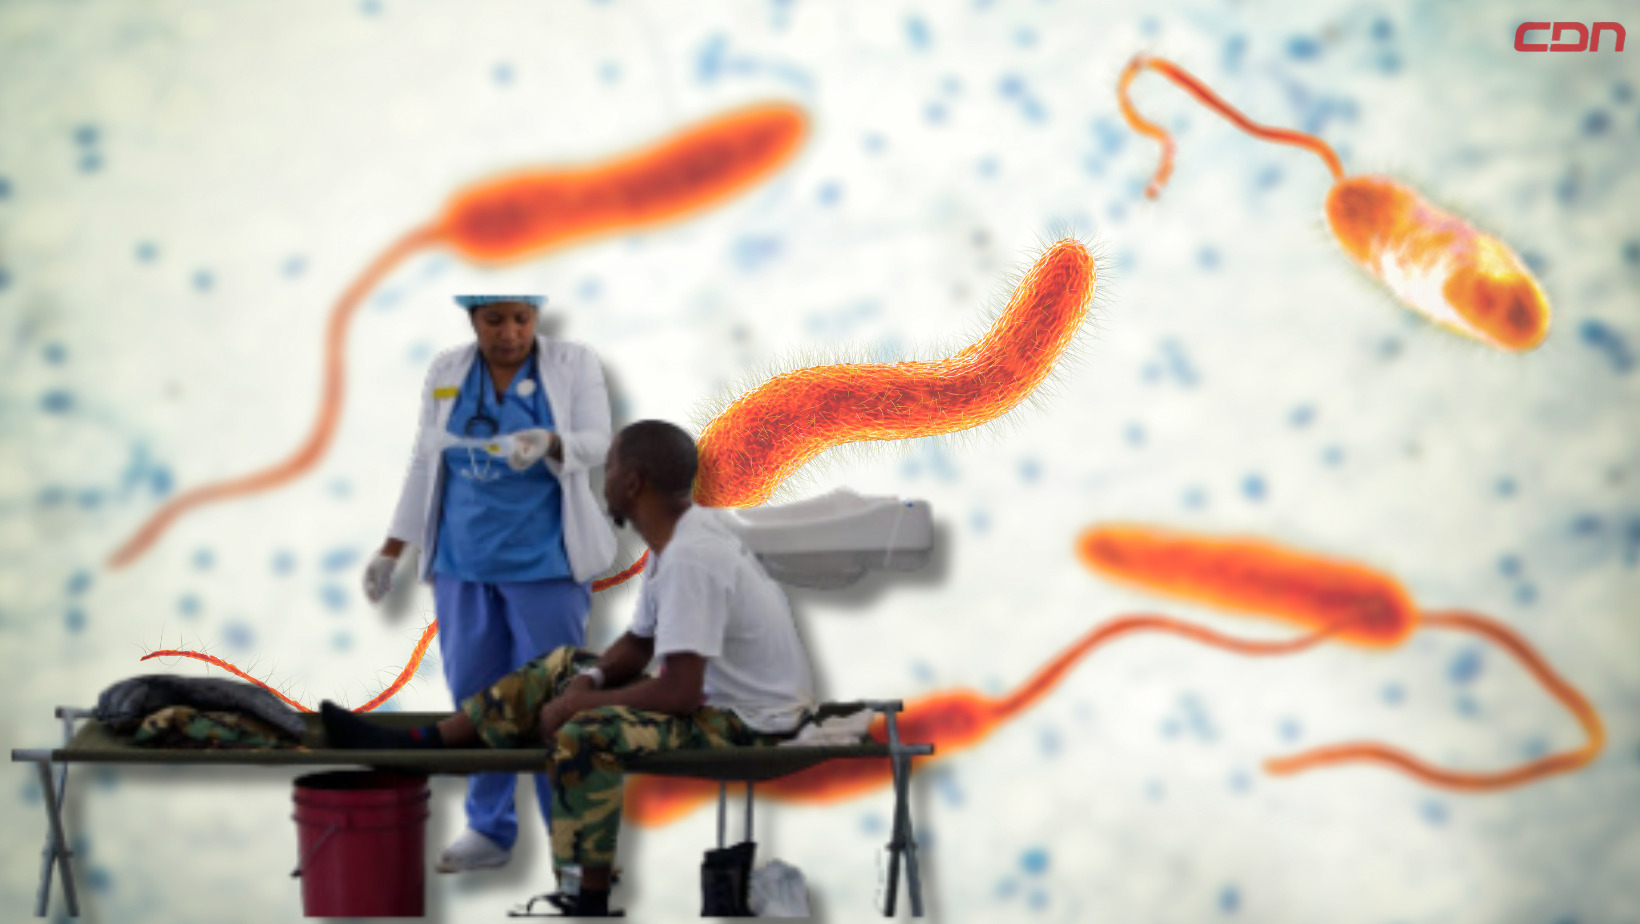 Brote mundial de cólera, según la OMS. Foto: CDN Digital